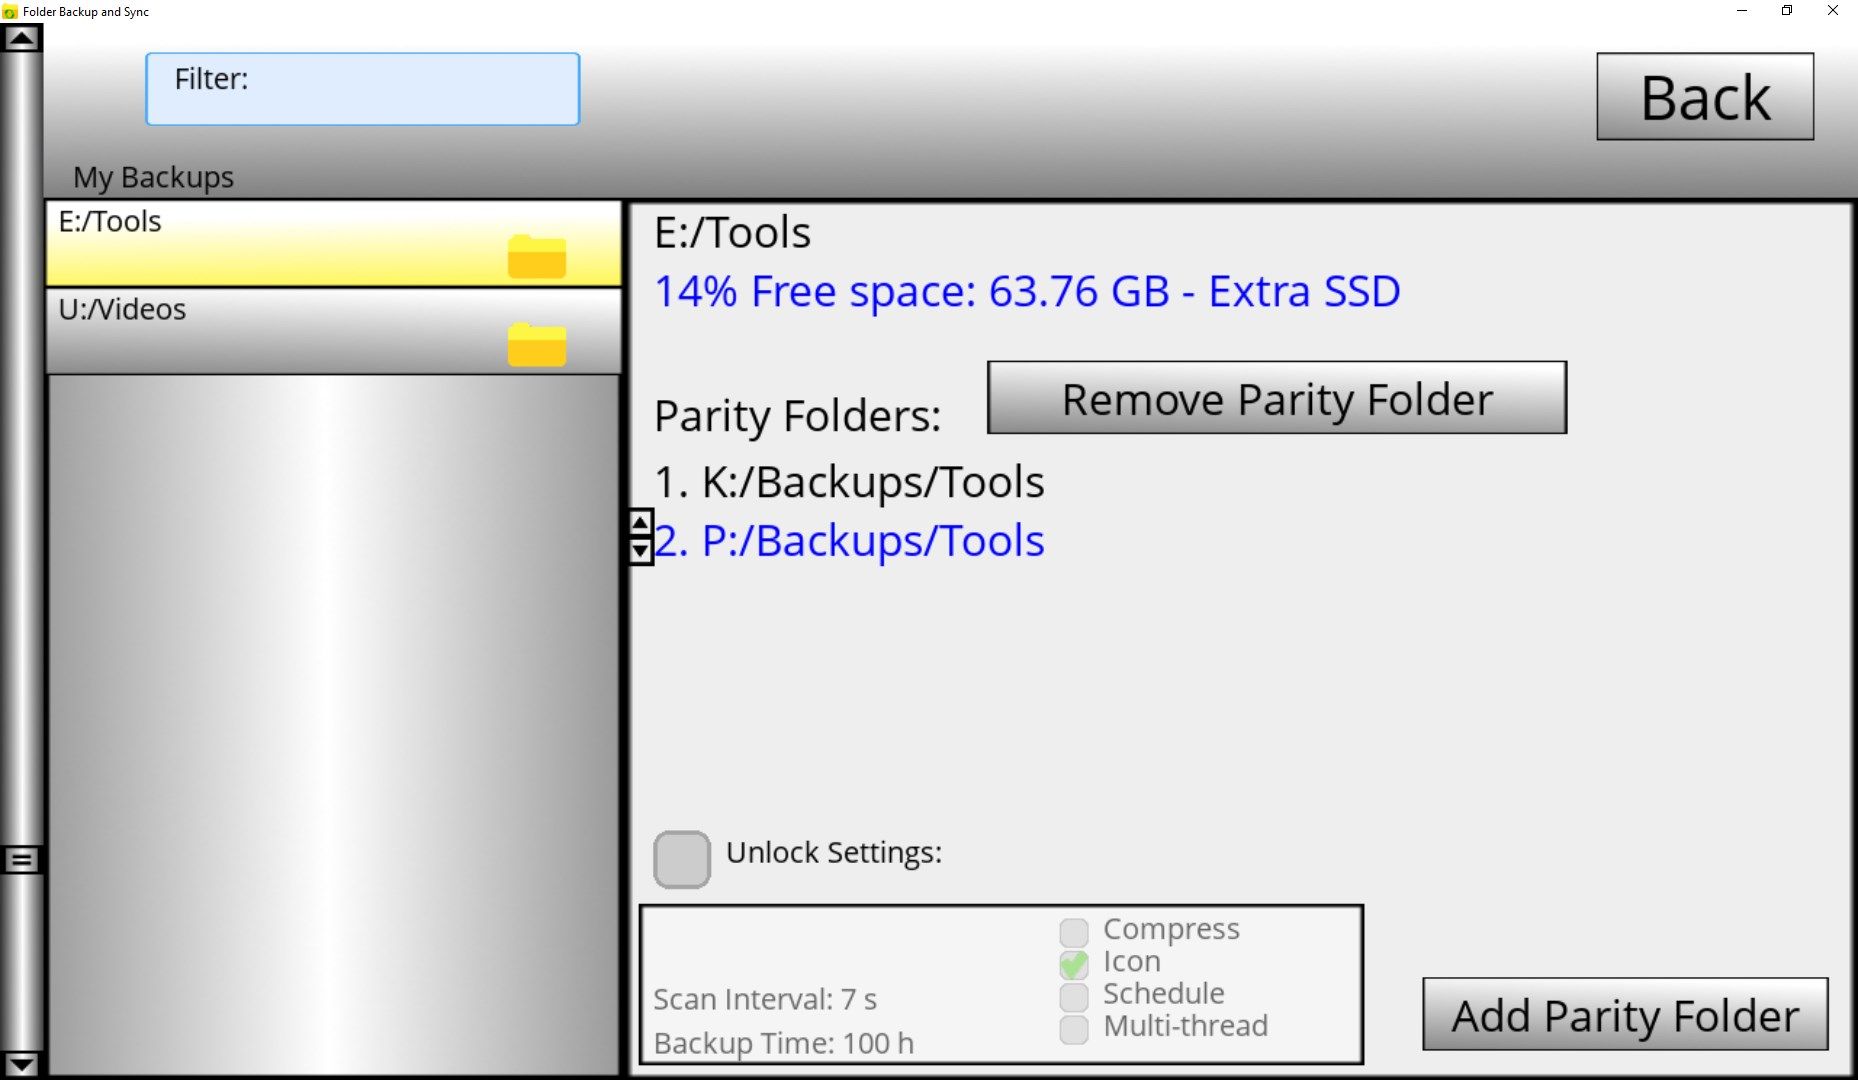 Folder Backup and Sync